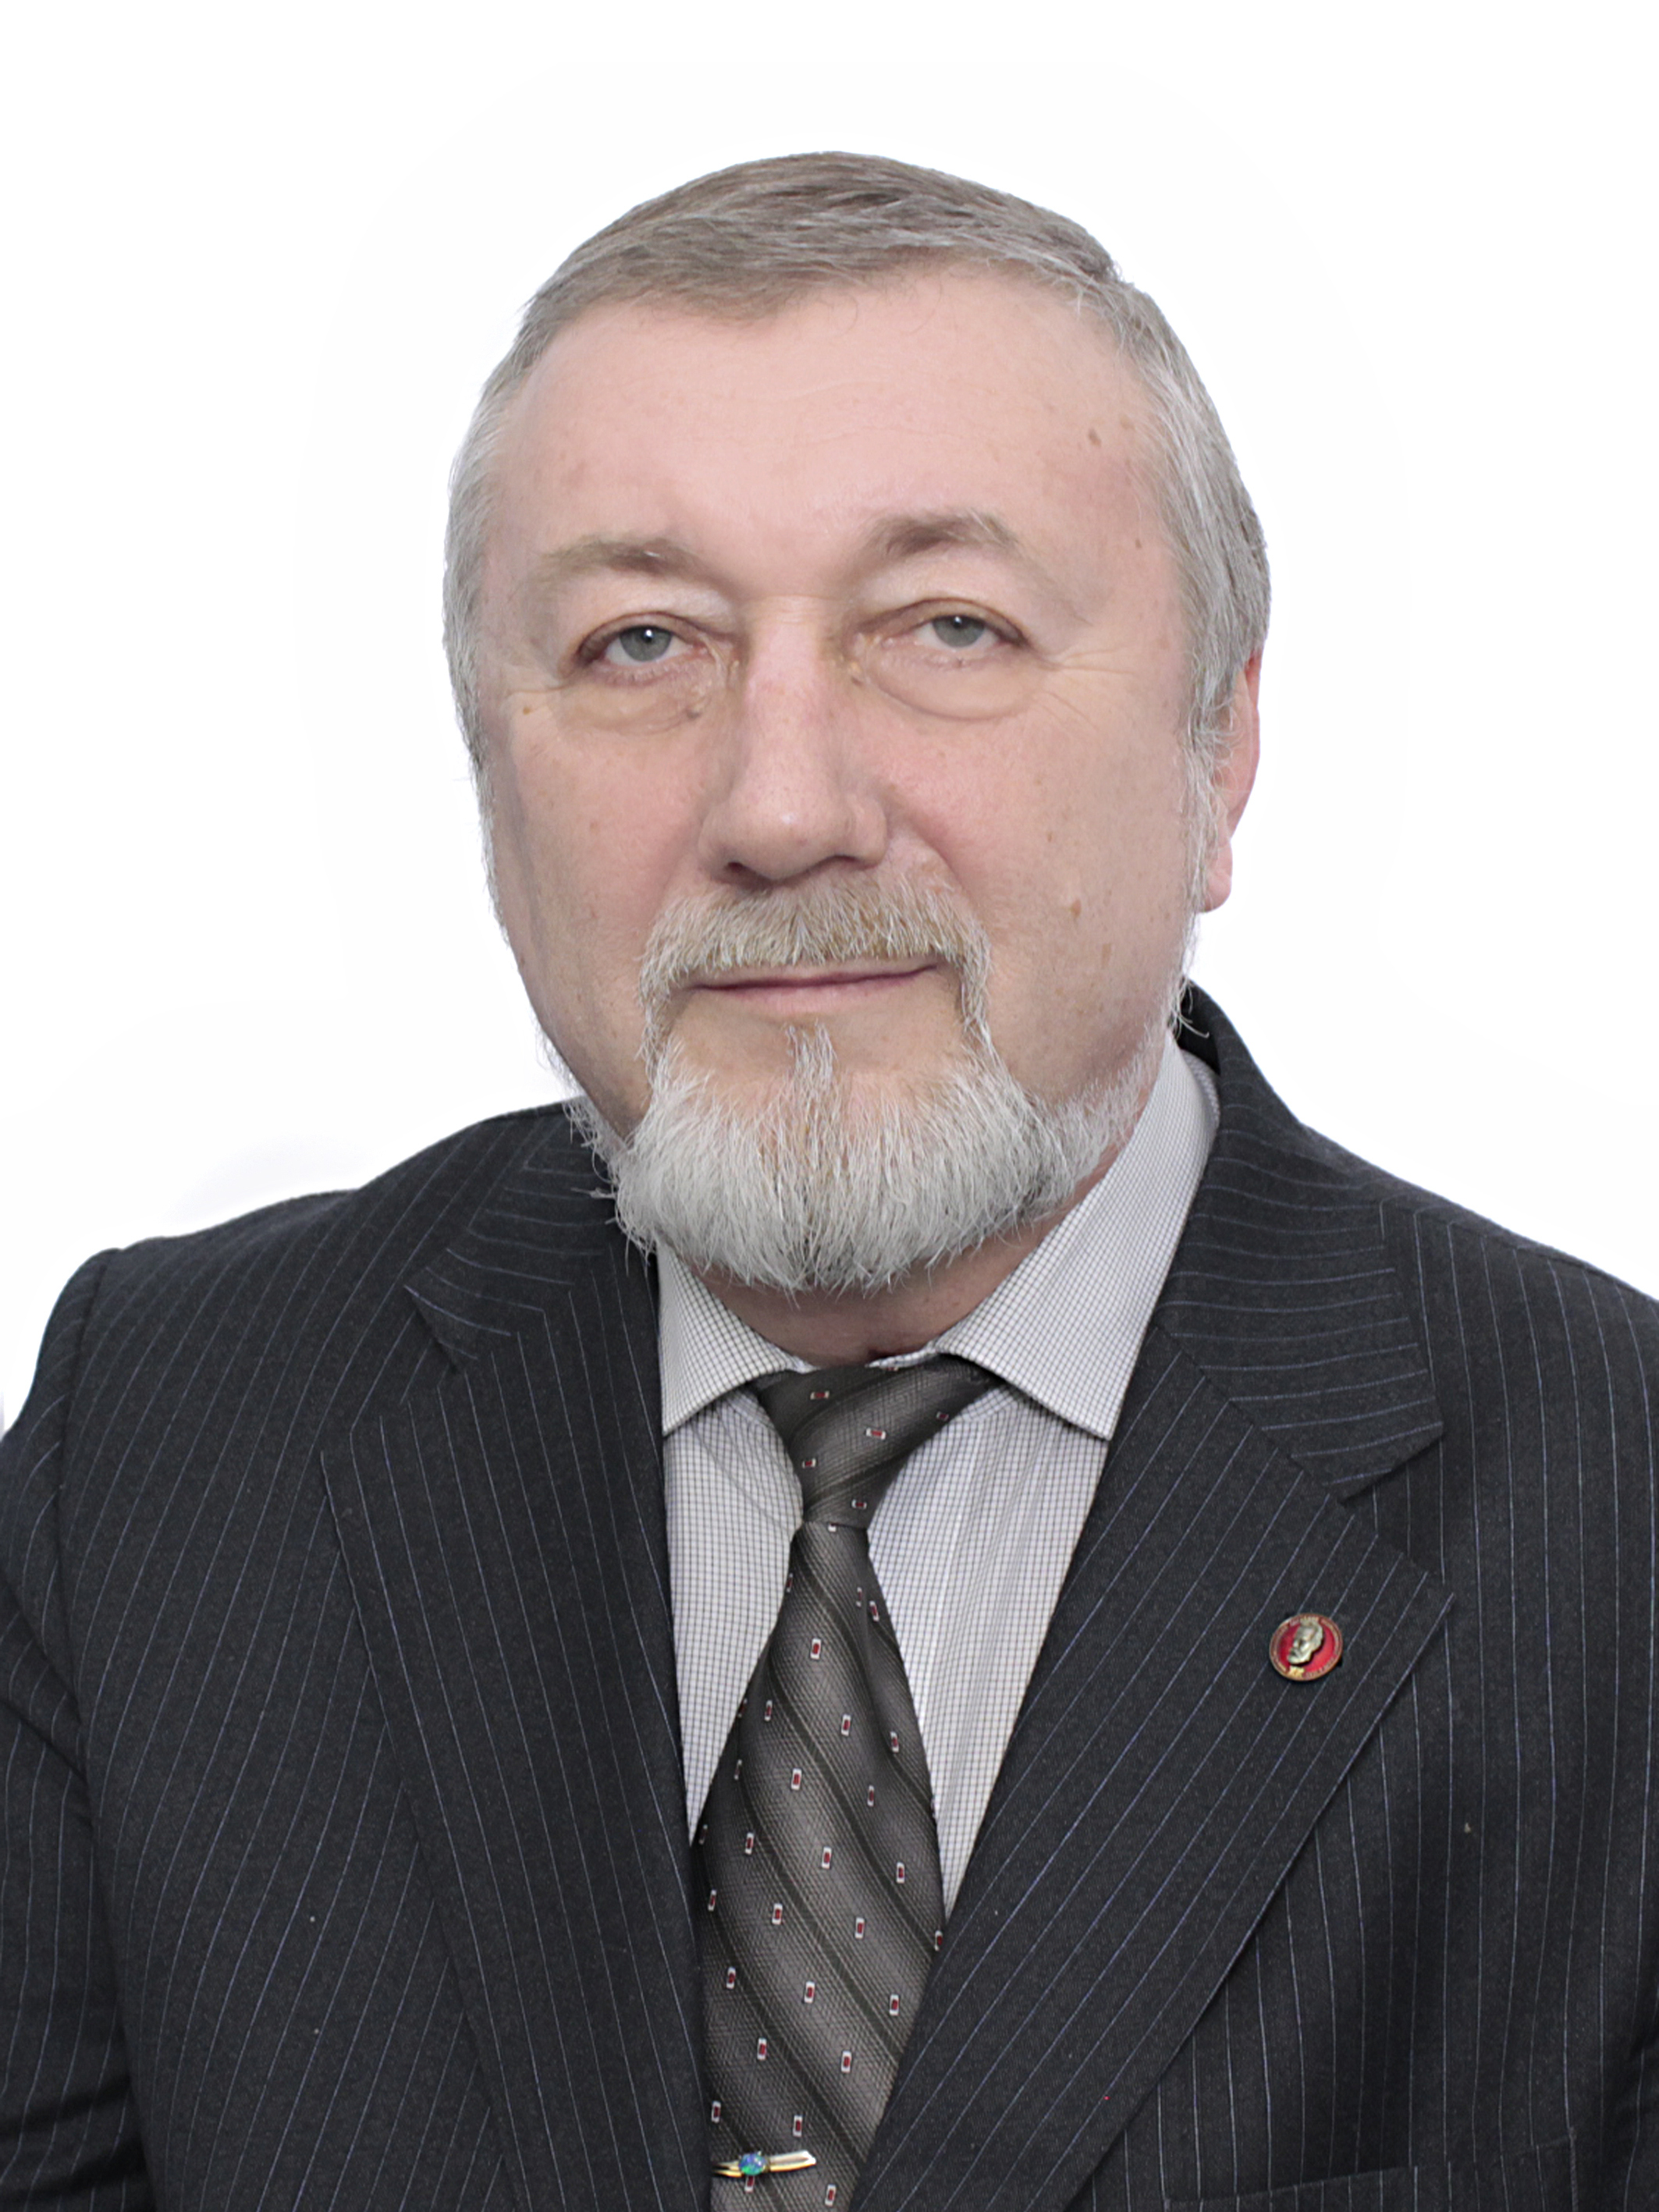                         Shohin Sergey
            